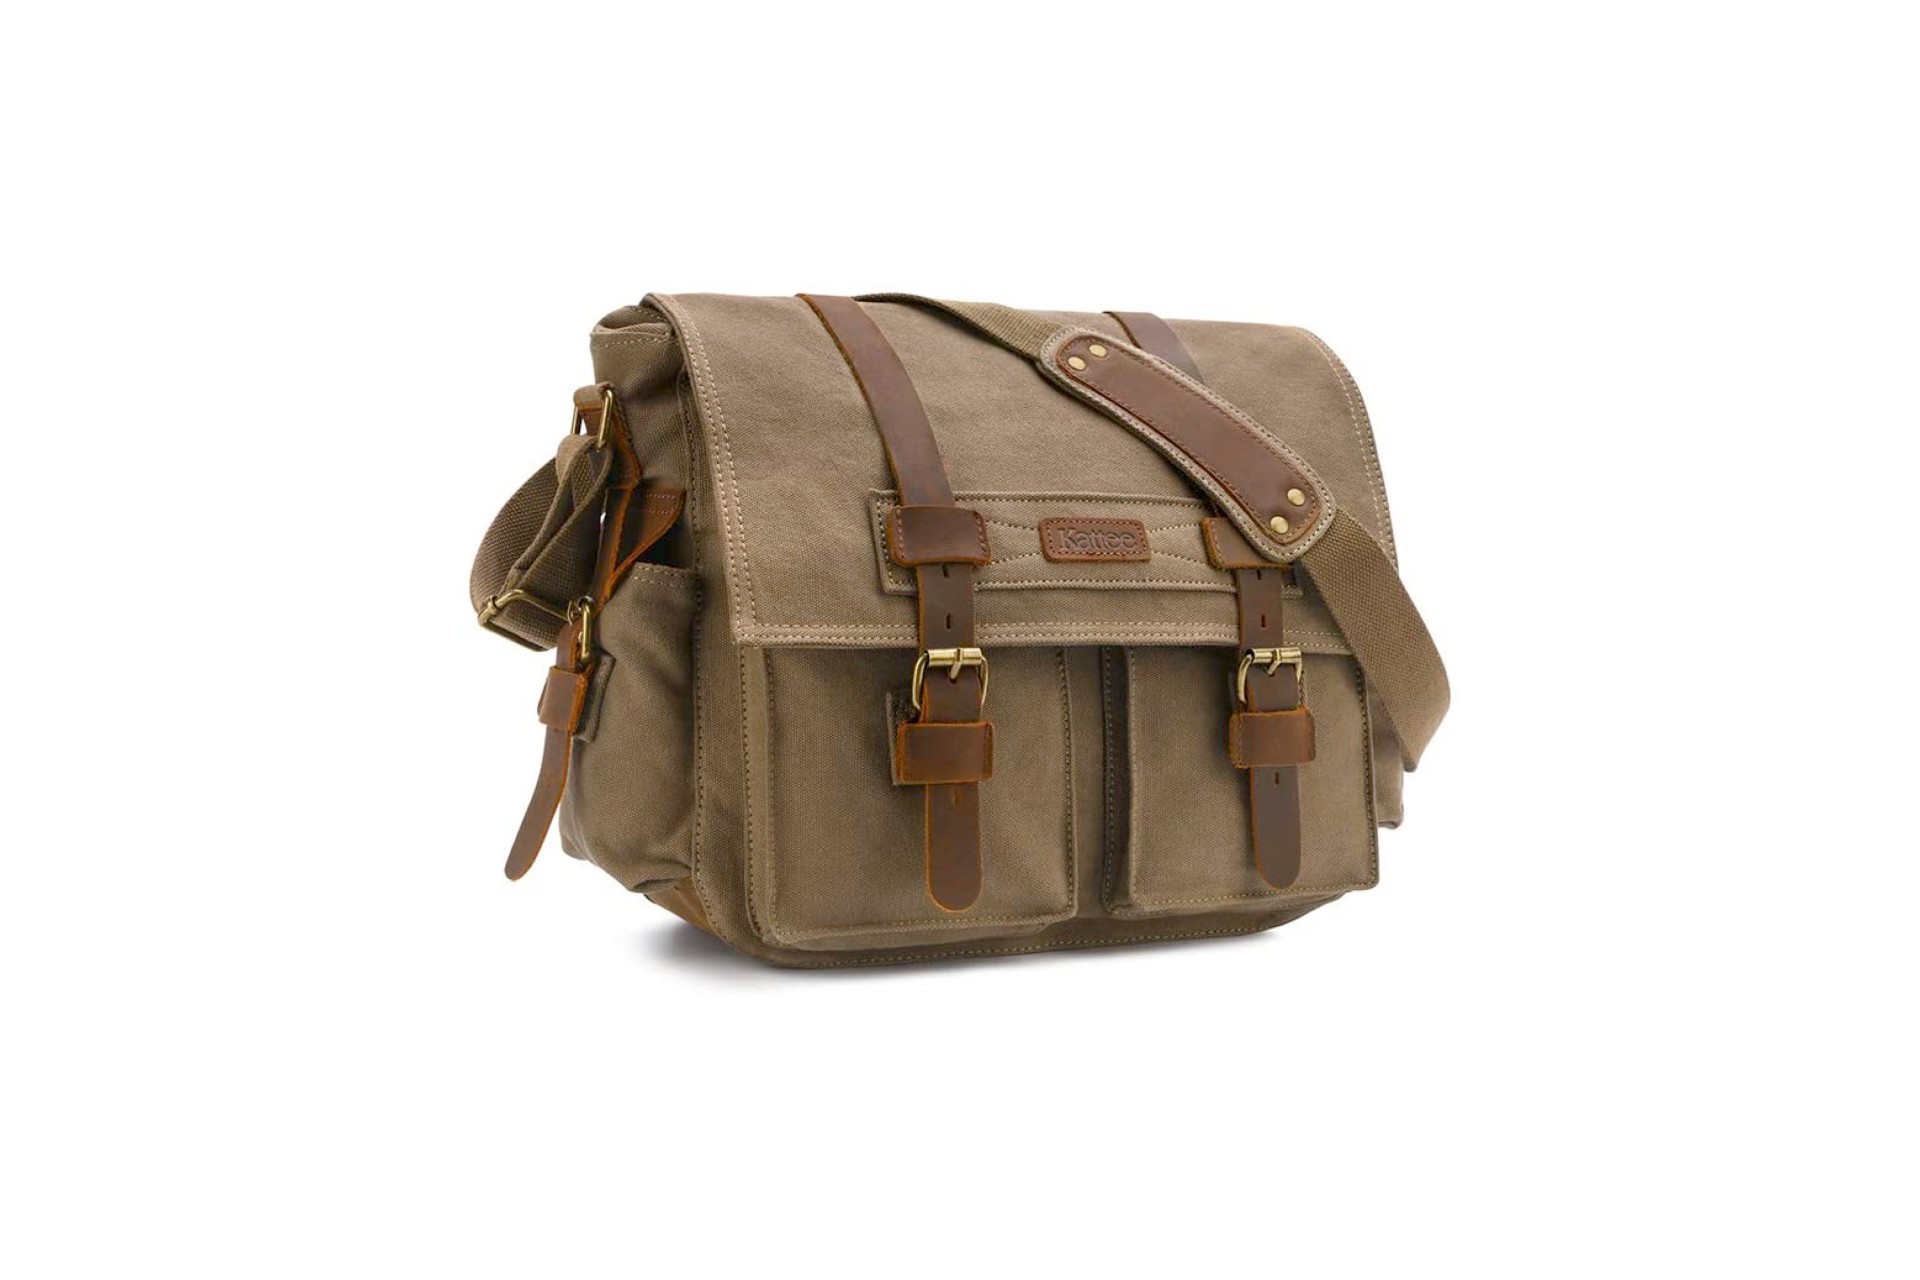 Men's Sports Utility Messenger Bag Large Capacity Single Shoulder Crossbody  Bag Shoulder Bag Sling Bag Side Bag For Travel Commute Business Holiday